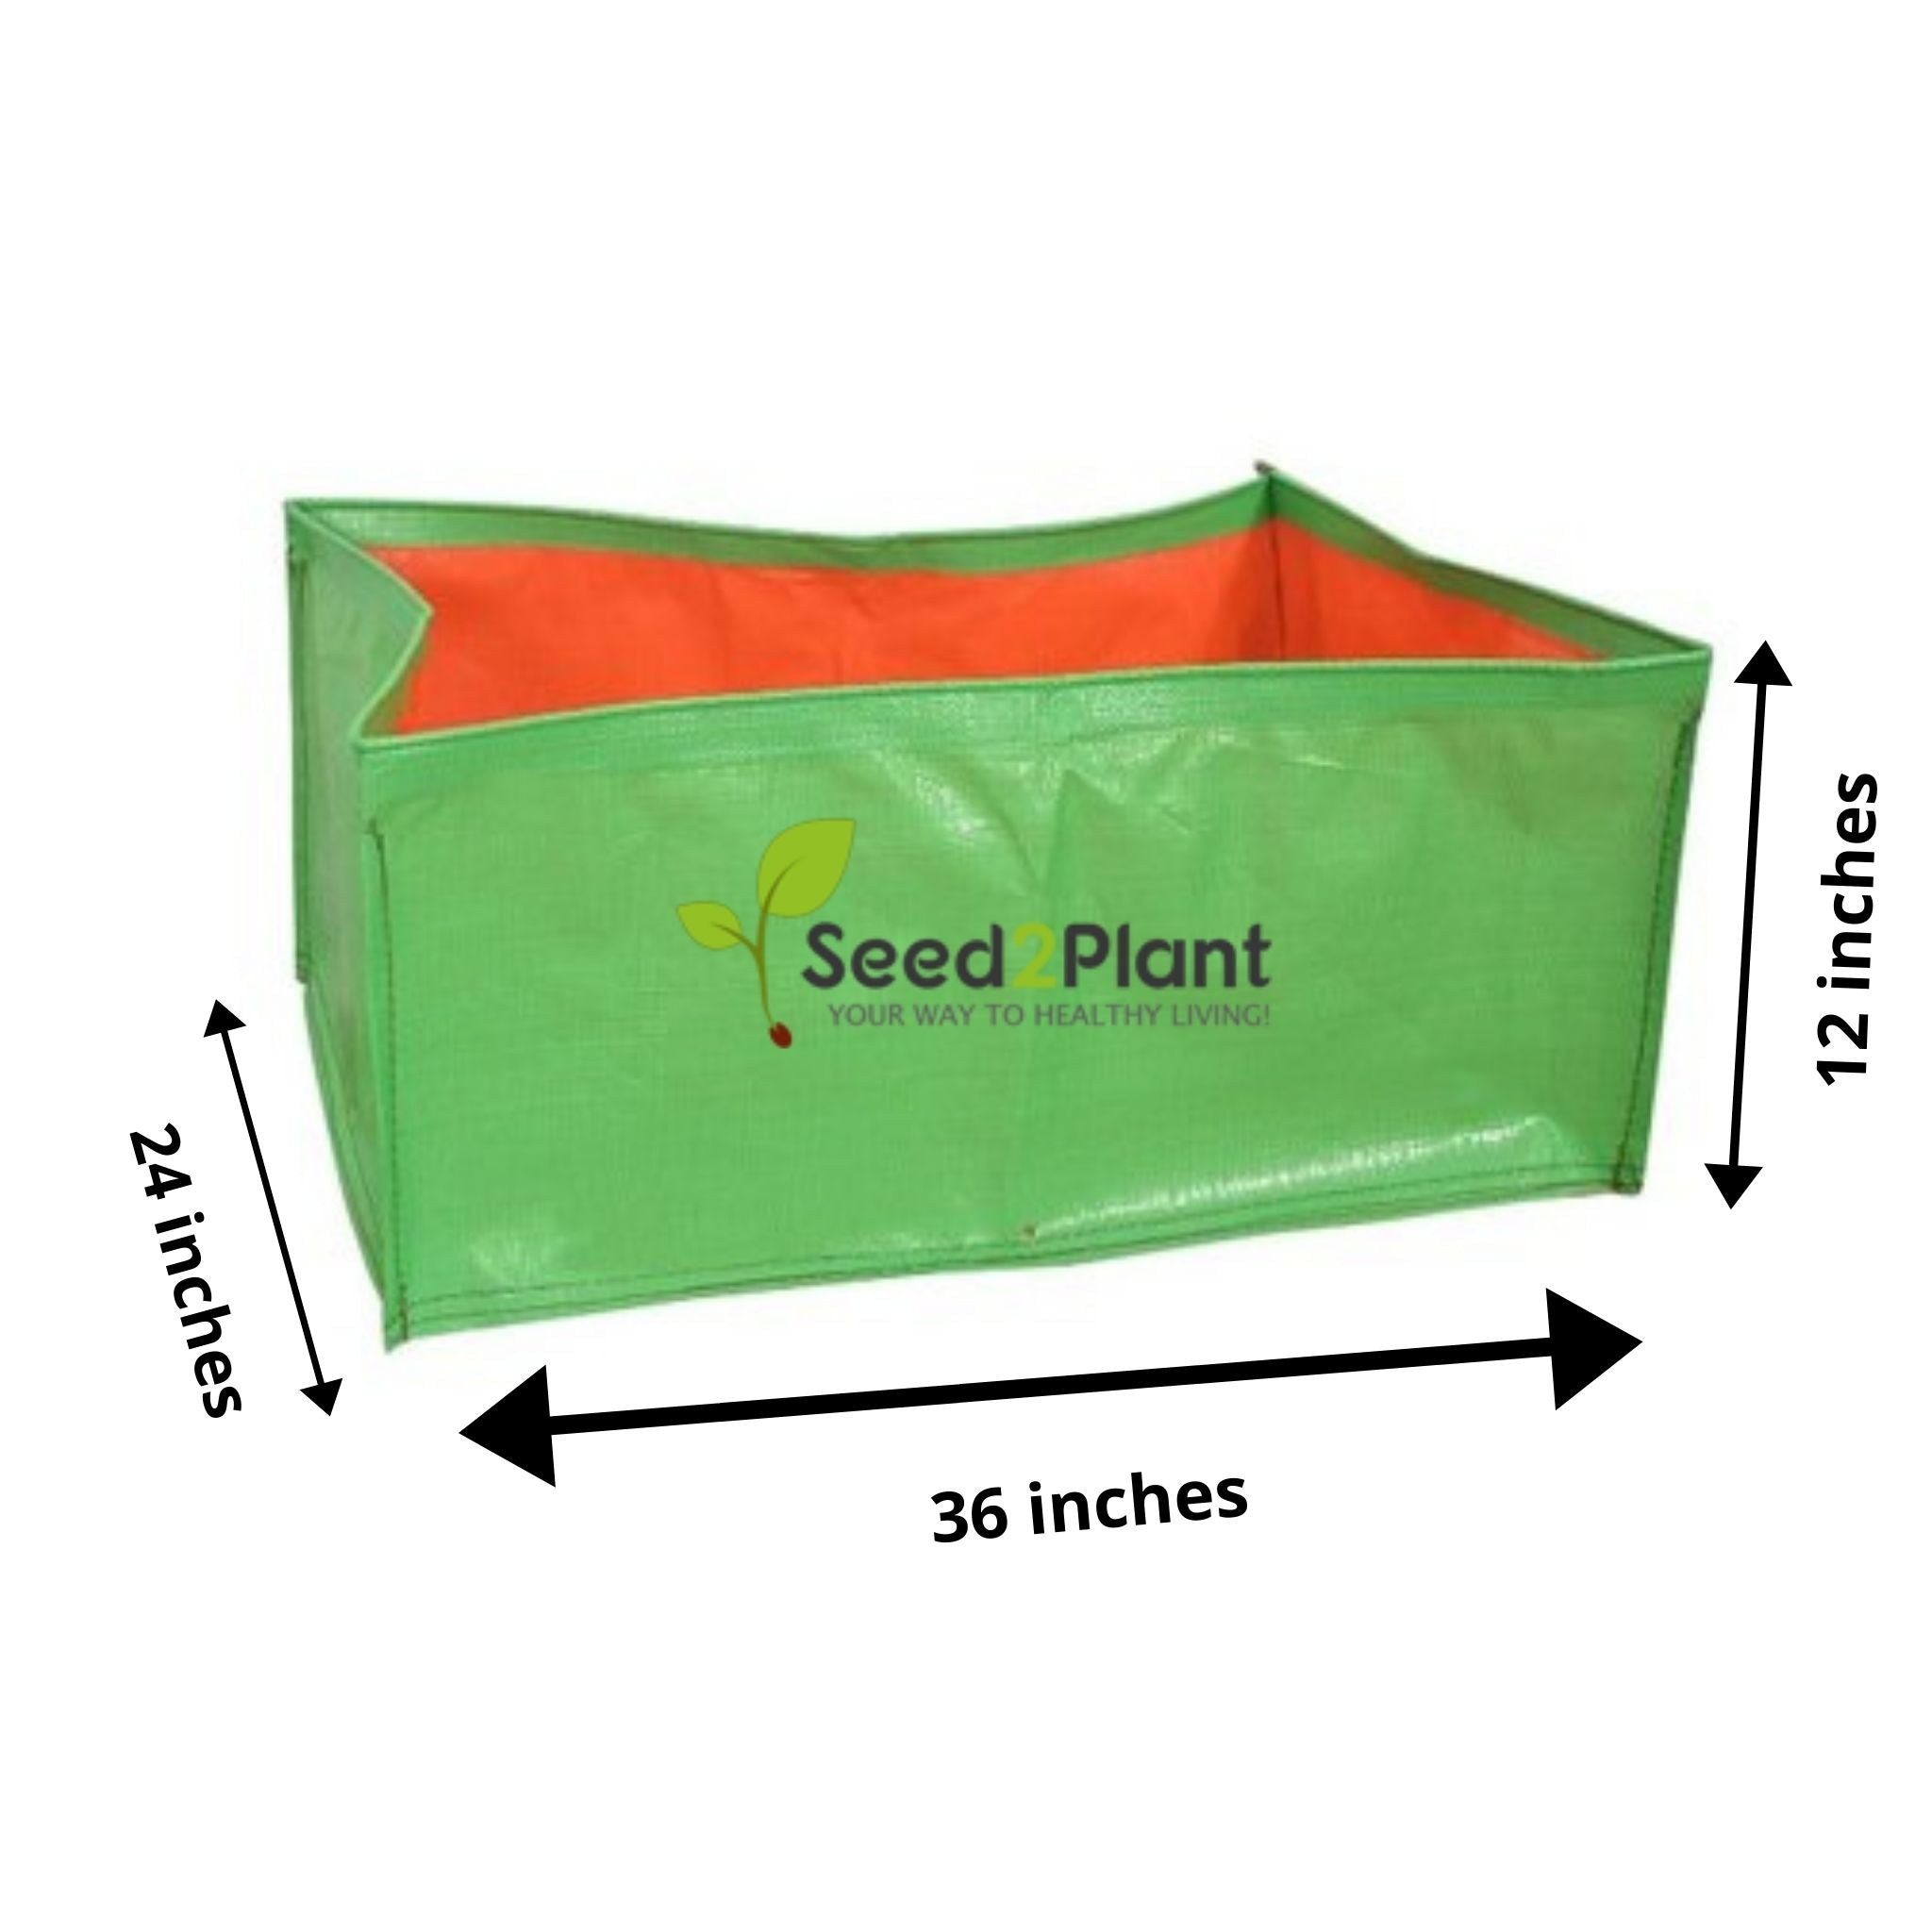 Hdpe grow bag 36x36, hdpe grow bags online, hdpe grow bags wholesale